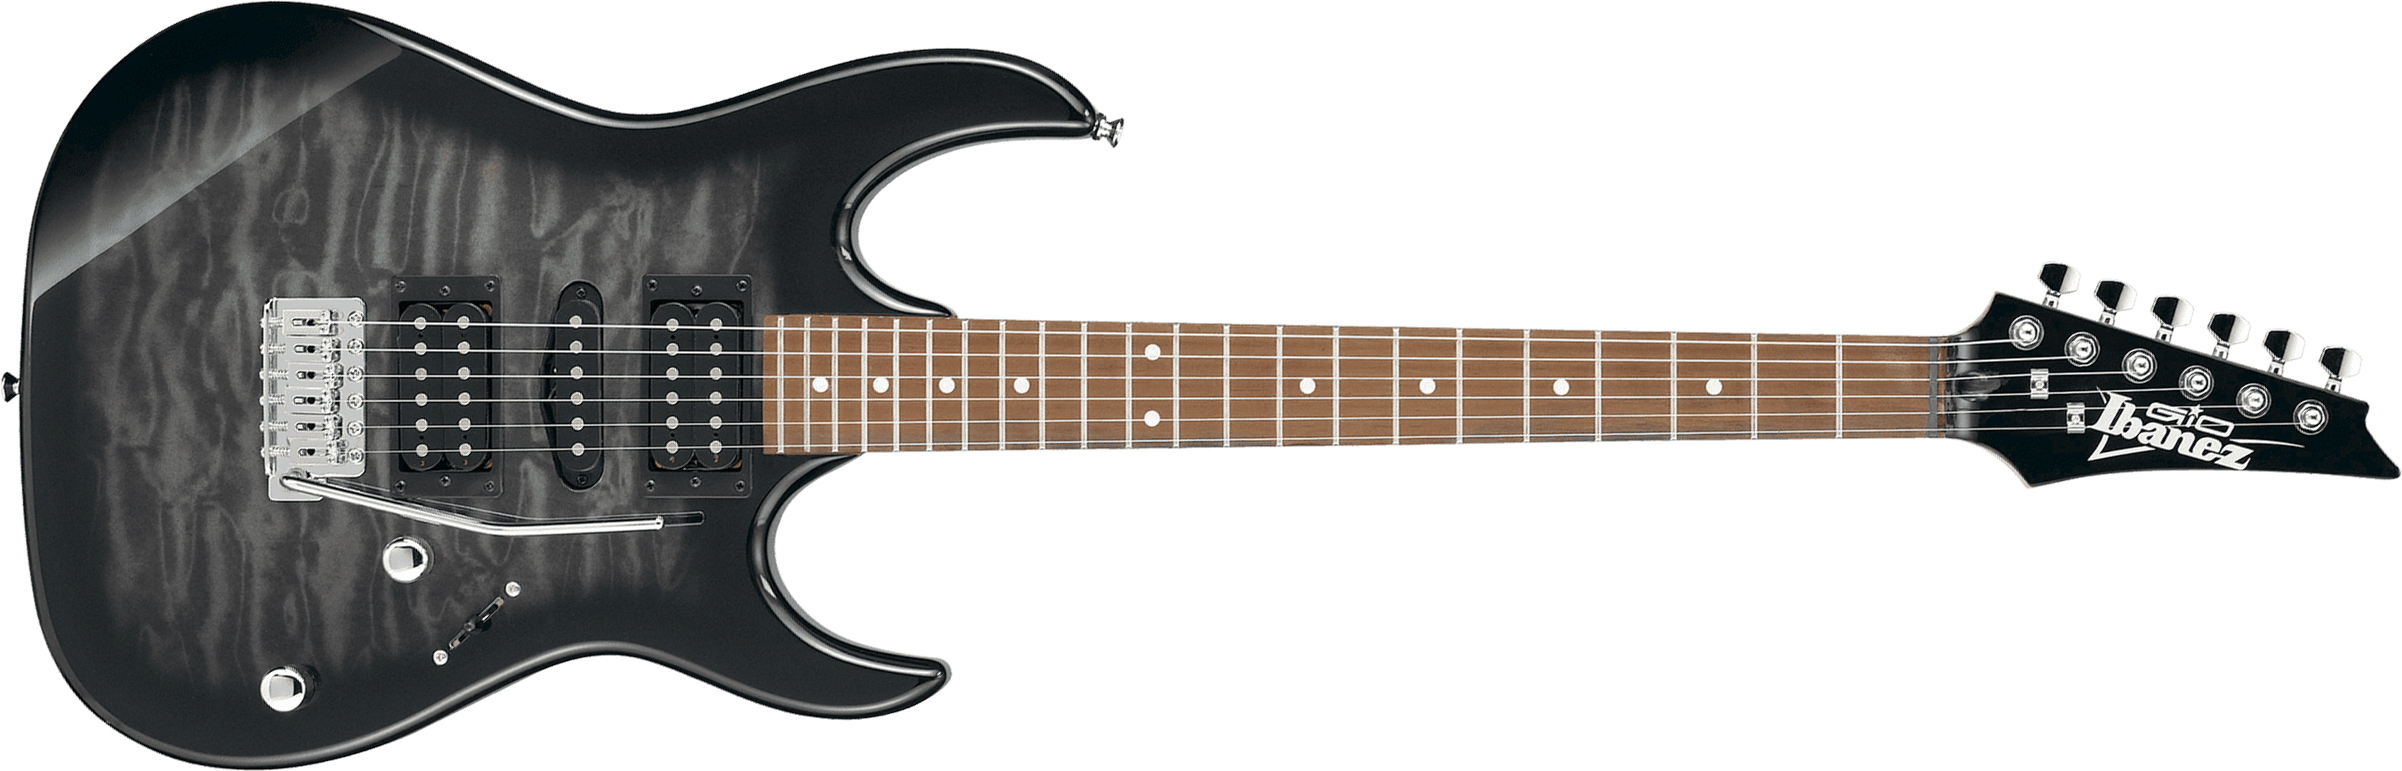 Ibanez Grx70qa Tks Gio Hsh Trem Nzp - Transparent Black Sunburst - Guitare Électrique Forme Str - Main picture